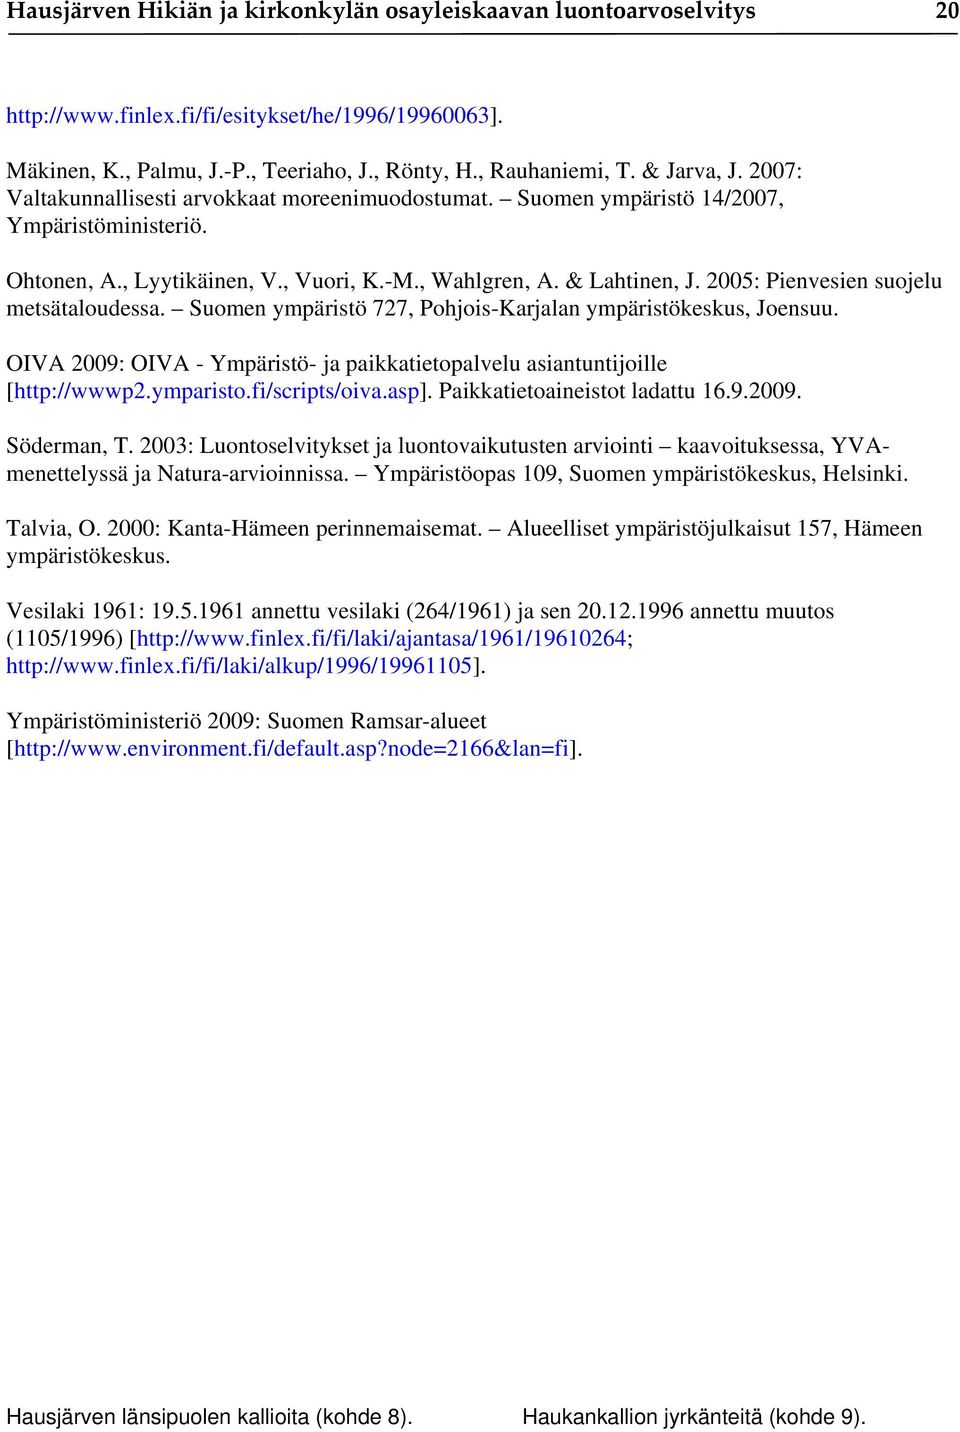 2005: Pienvesien suojelu metsätaloudessa. Suomen ympäristö 727, Pohjois-Karjalan ympäristökeskus, Joensuu. OIVA 2009: OIVA - Ympäristö- ja paikkatietopalvelu asiantuntijoille [http://wwwp2.ymparisto.